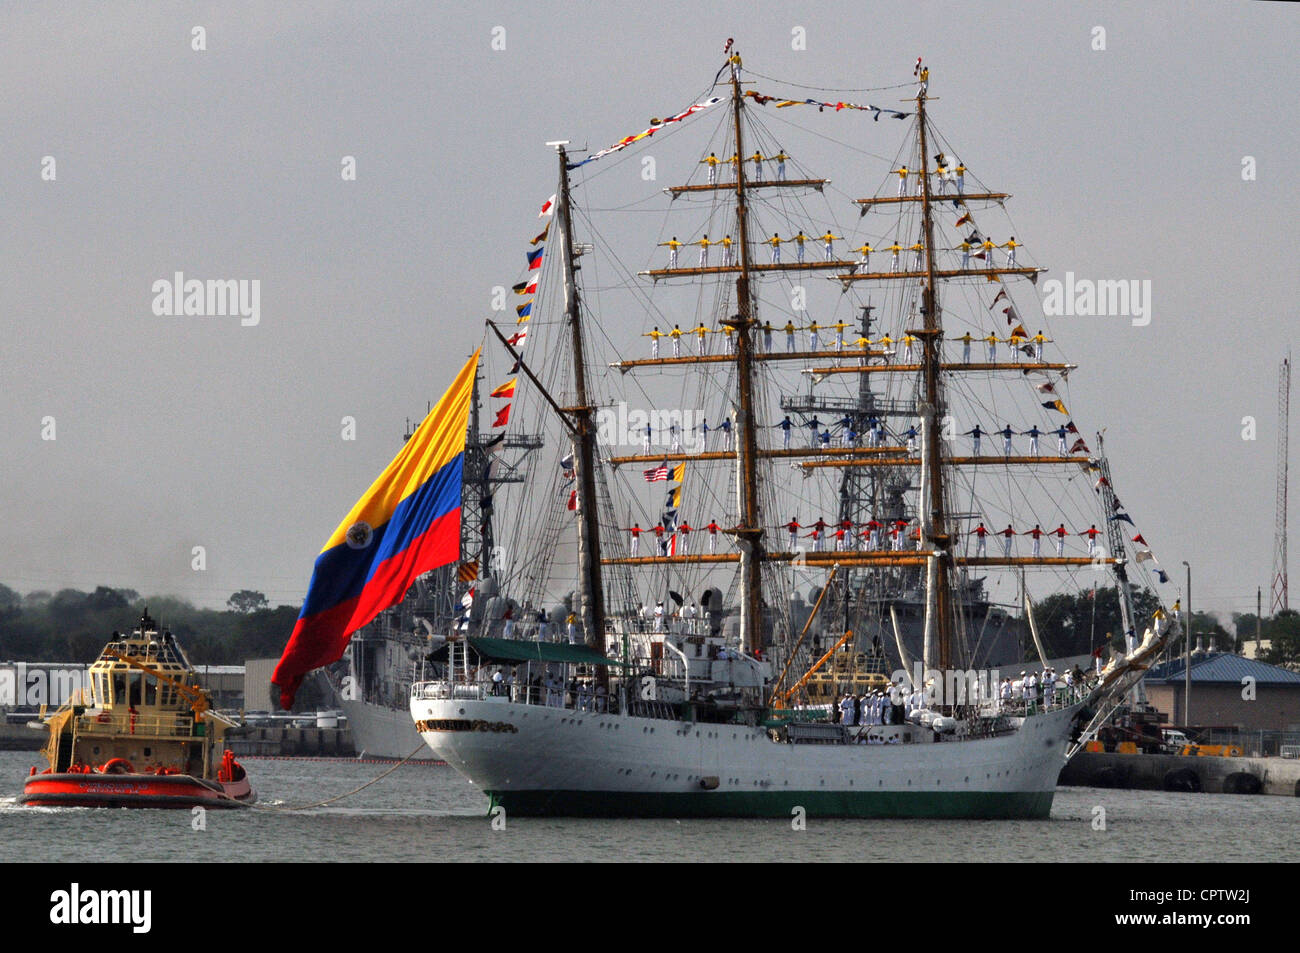 La barque à trois mâts de la marine colombienne ARC Gloria arrive à la base navale de Mayport pour une visite portuaire prévue. Gloria est le navire d'entraînement des cadets de la marine colombienne. Banque D'Images